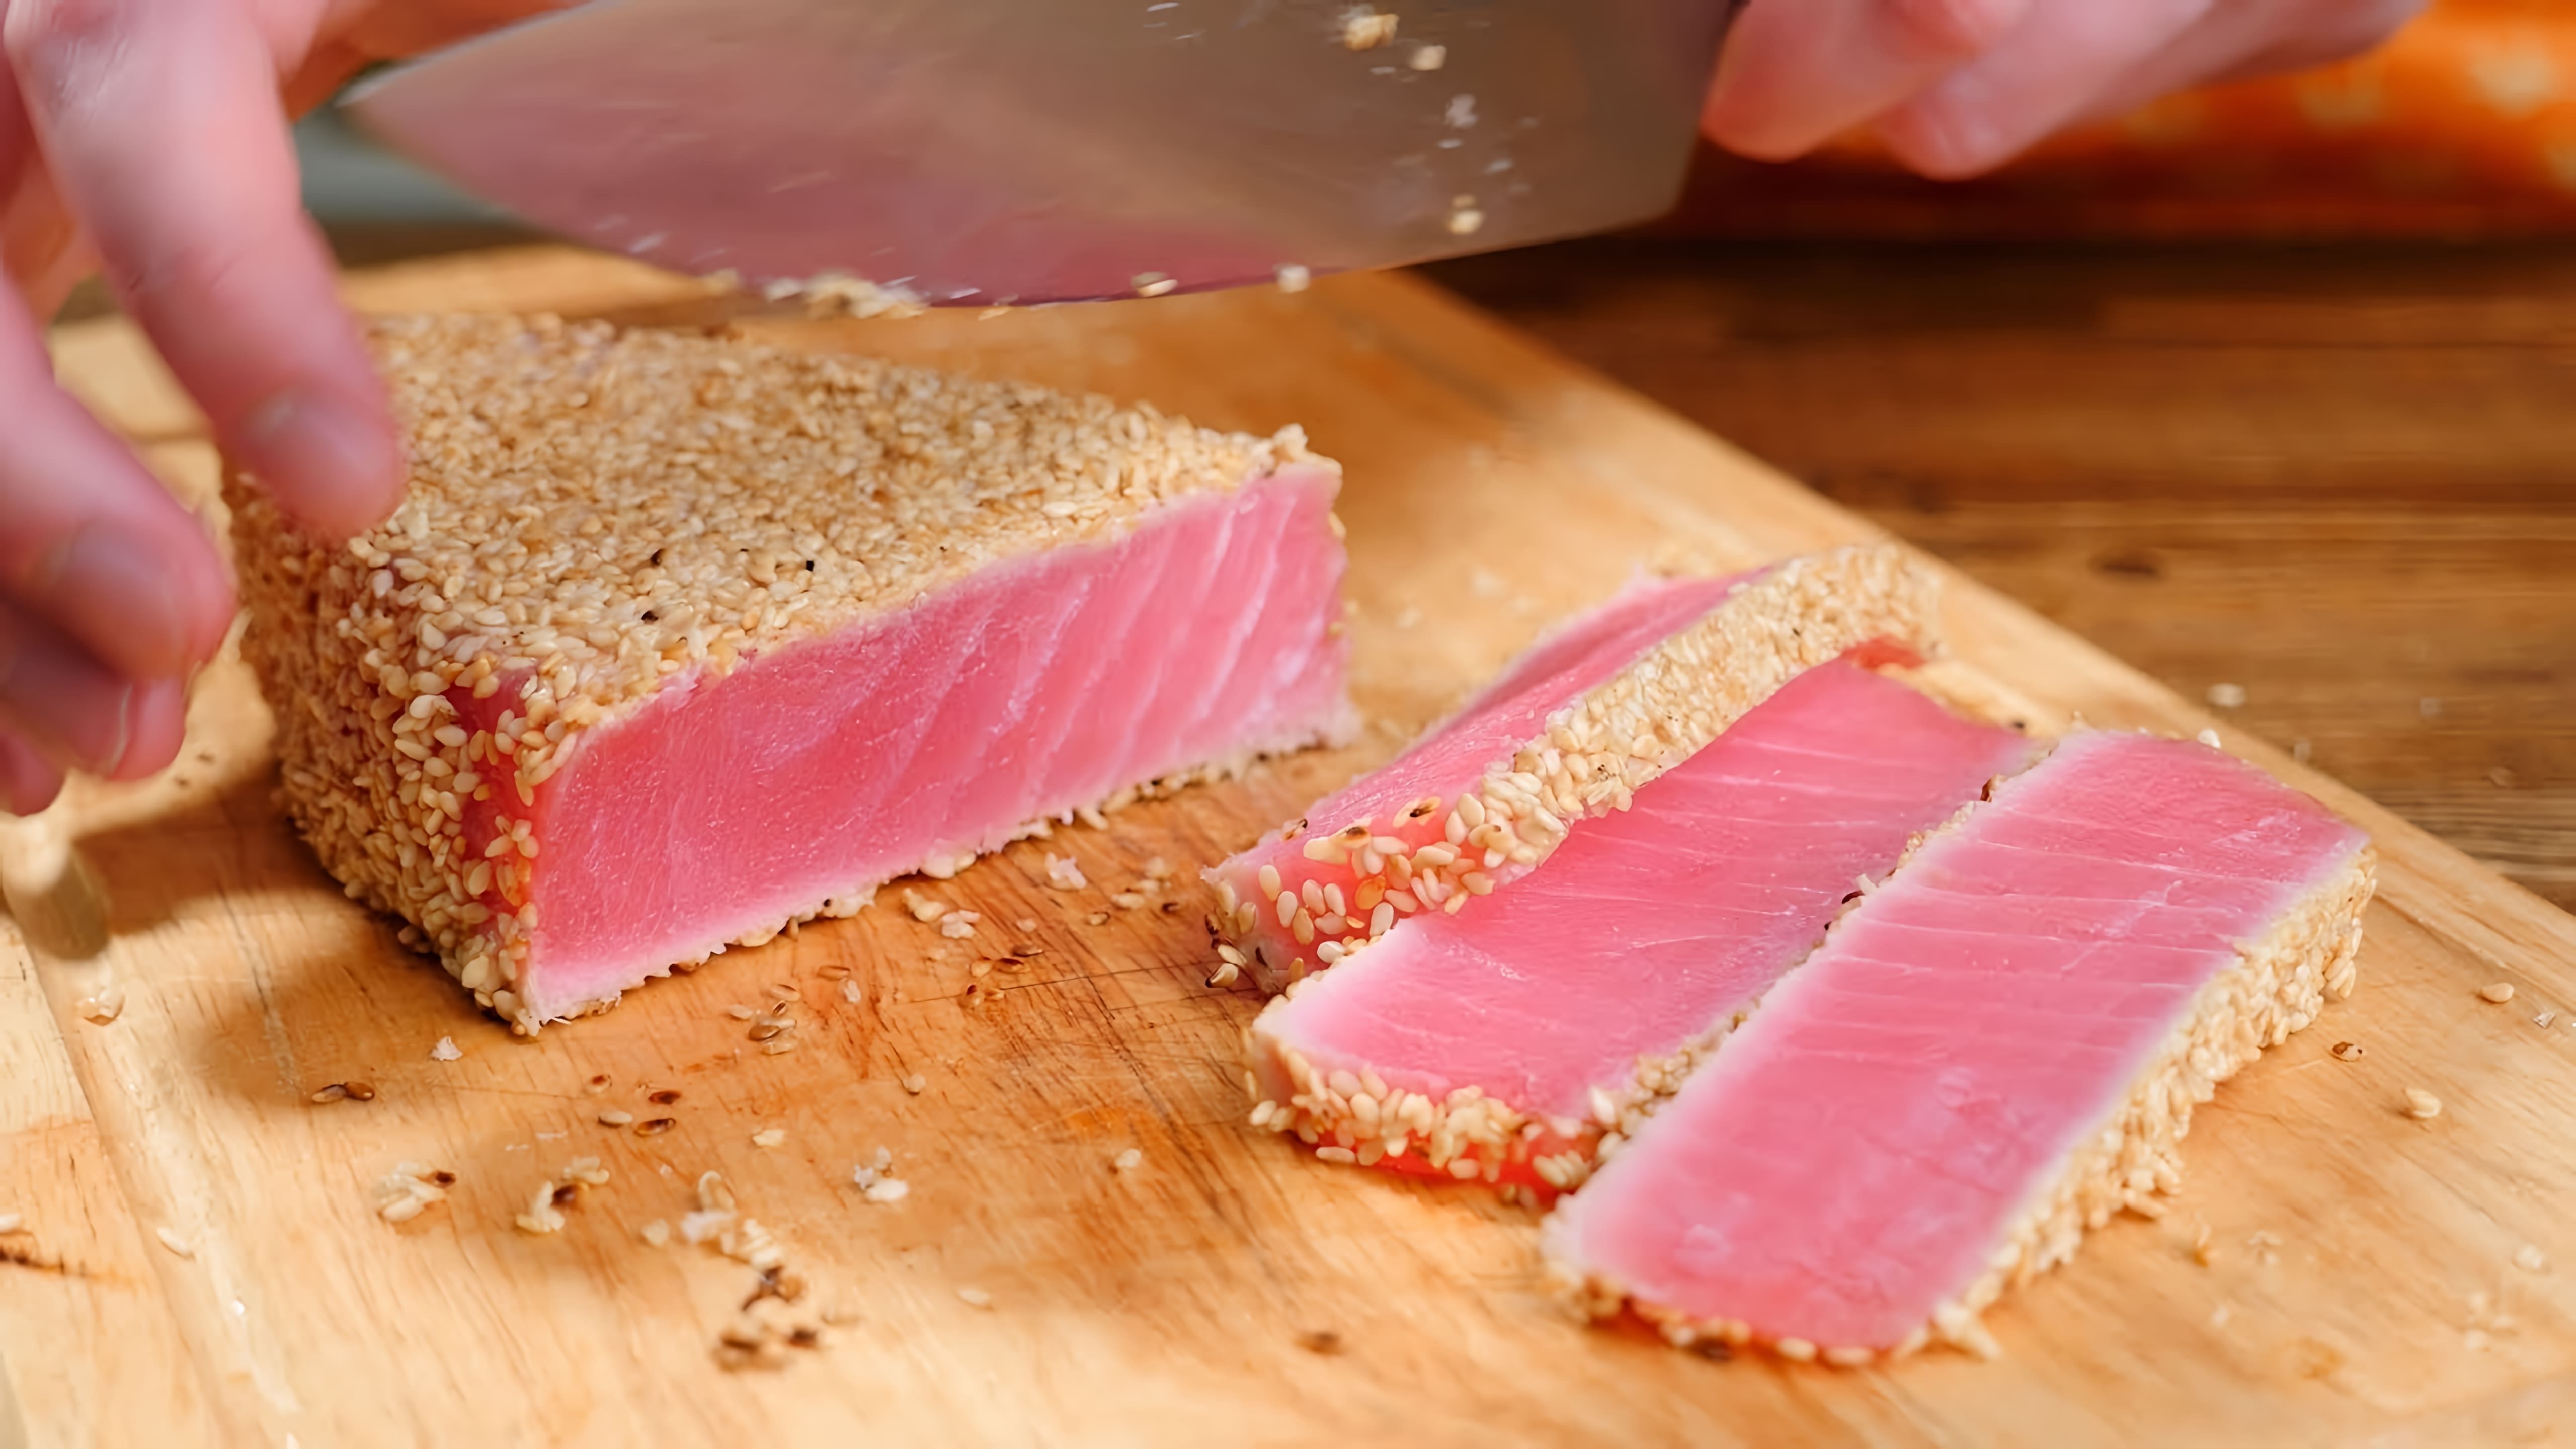 В этом видео показано, как приготовить стейк из тунца